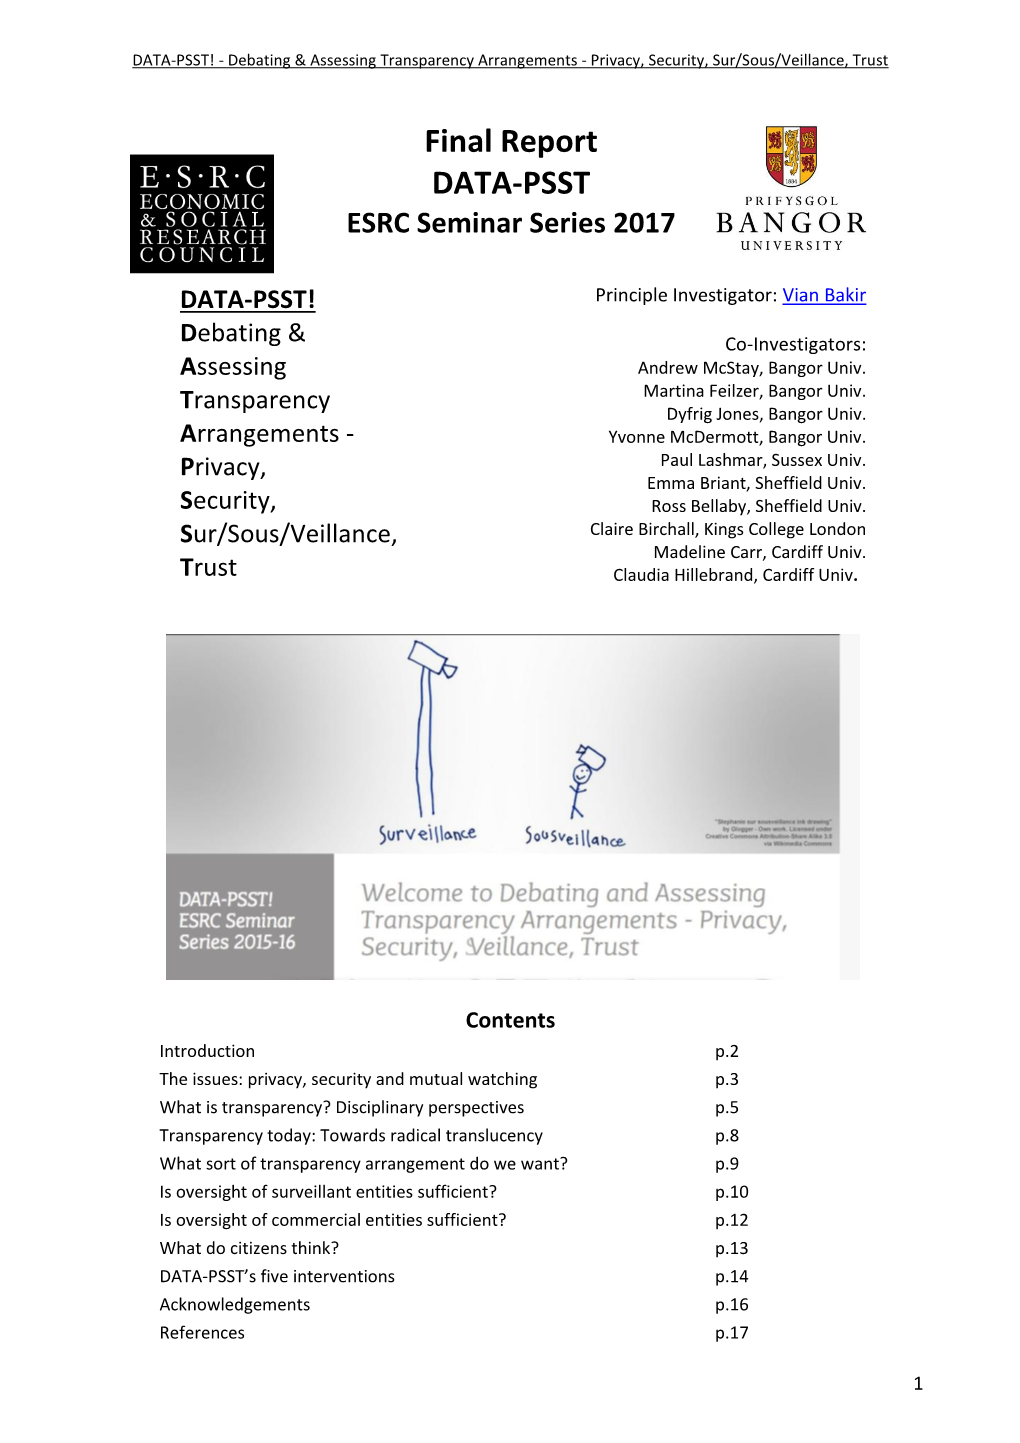 Final Report DATA-PSST ESRC Seminar Series 2017